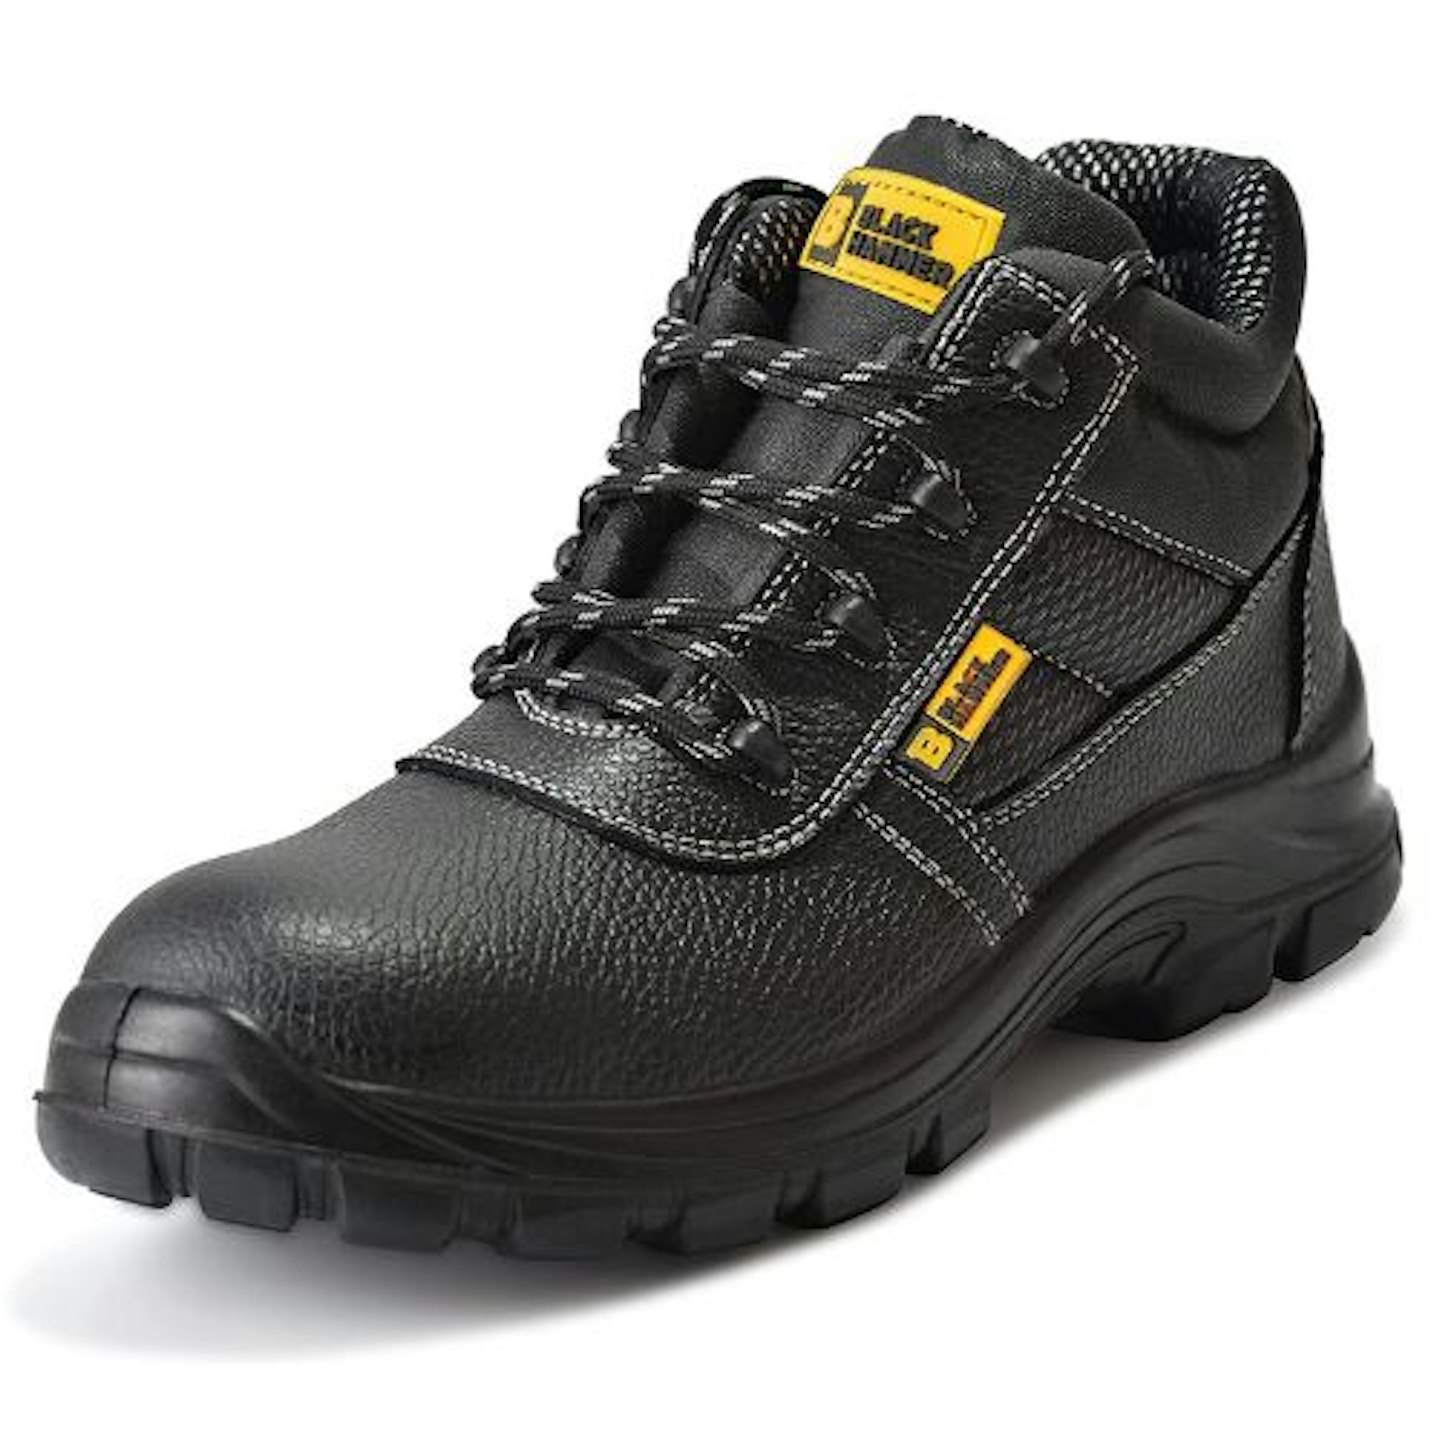 Black Hammer Men's Safety Boots